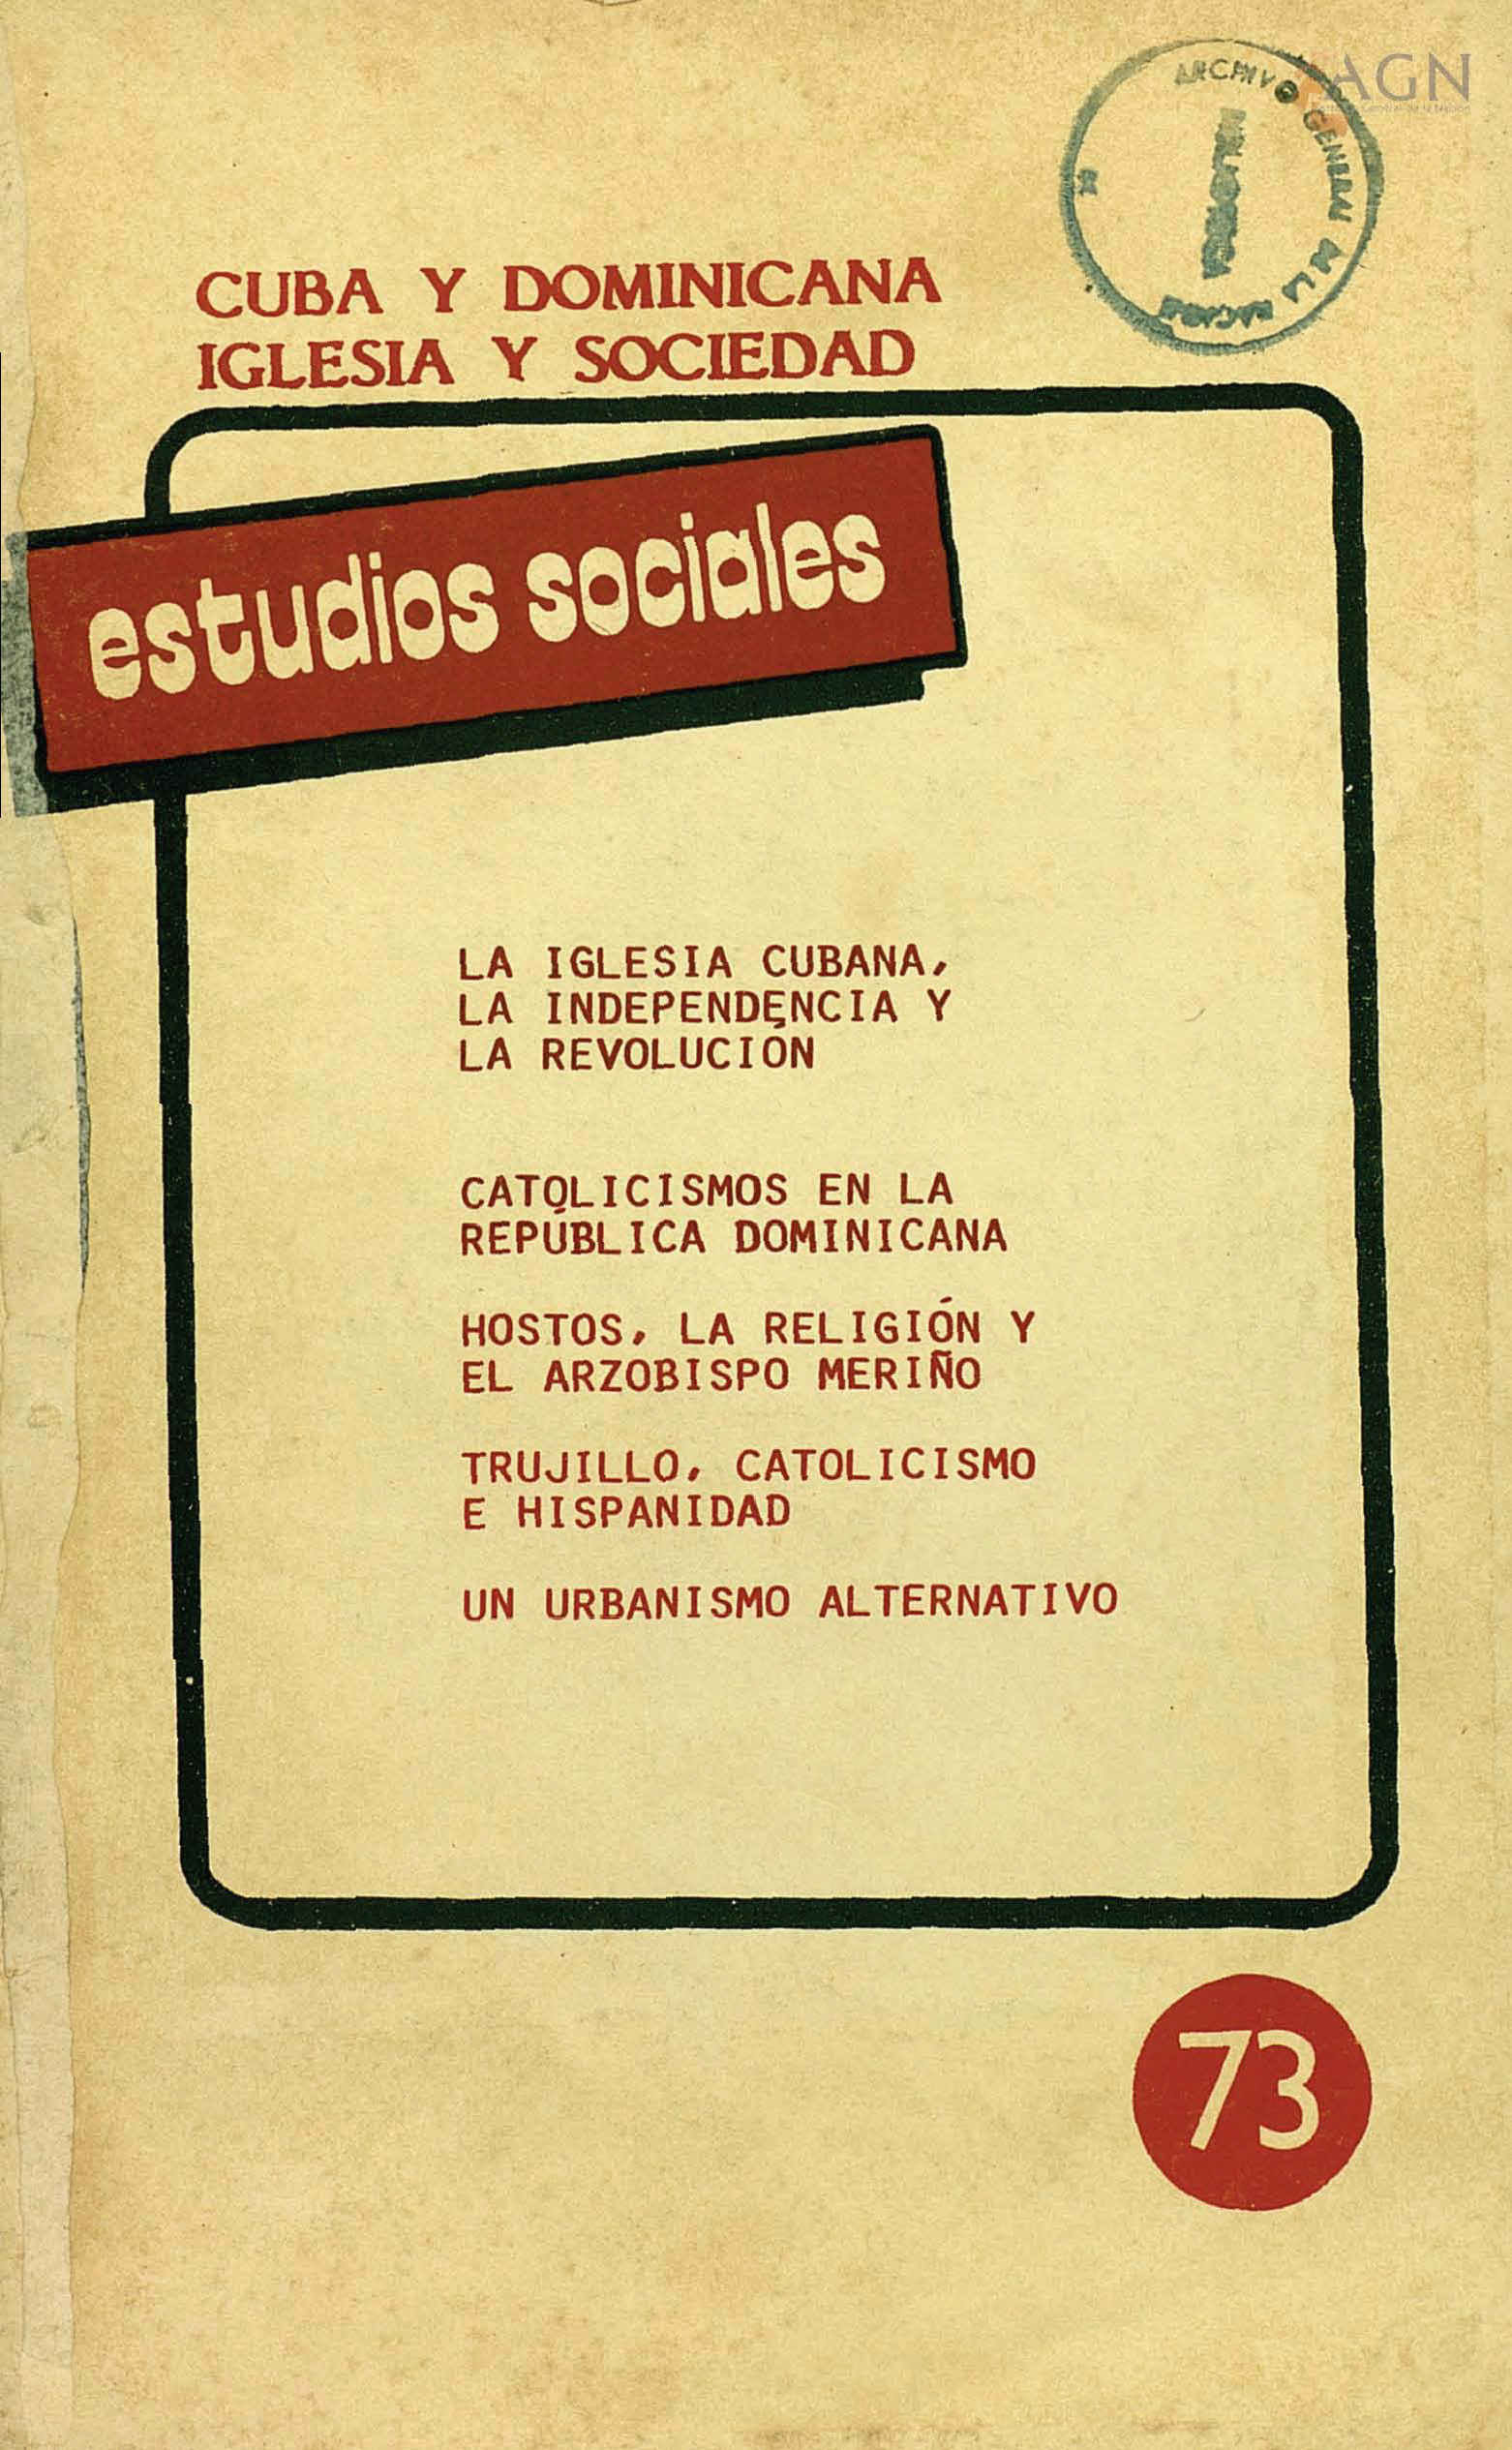 						Afficher Vol. 21 No 73 (1988): Cuba y Dominicana. Iglesia y Sociedad
					